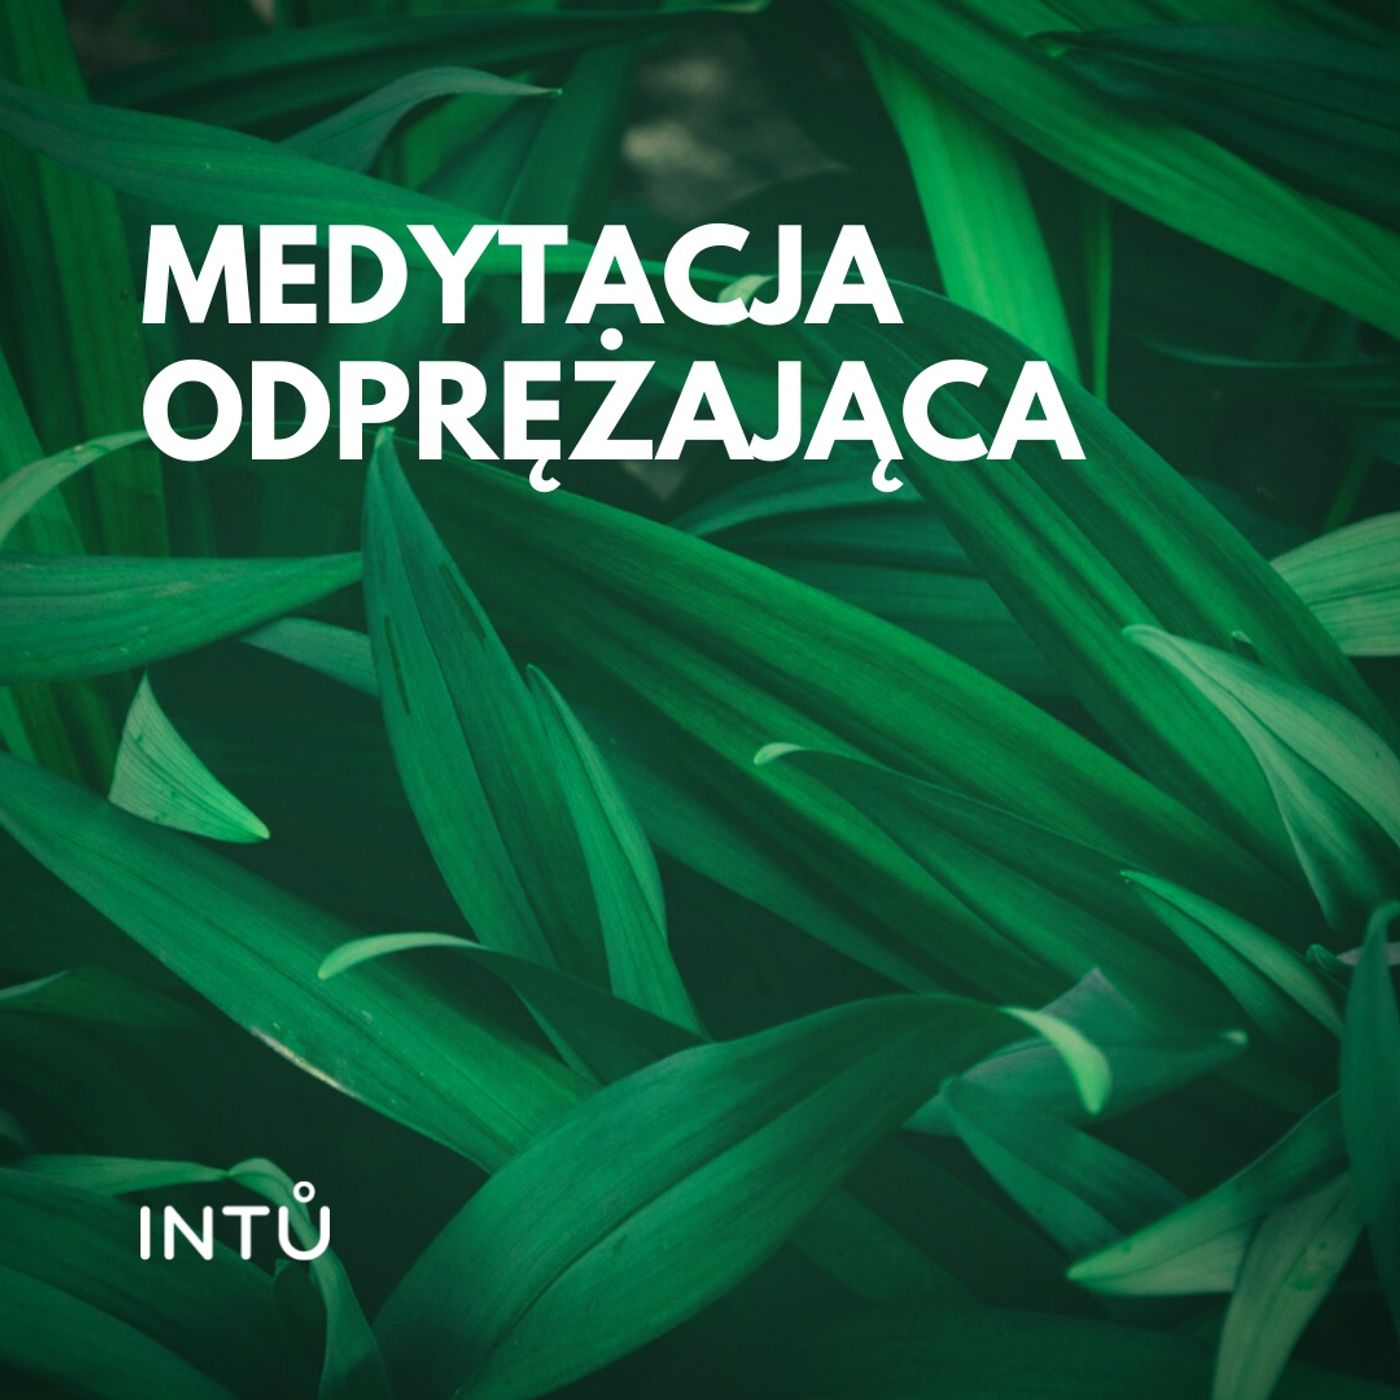 Medytacja odprężająca - INTU